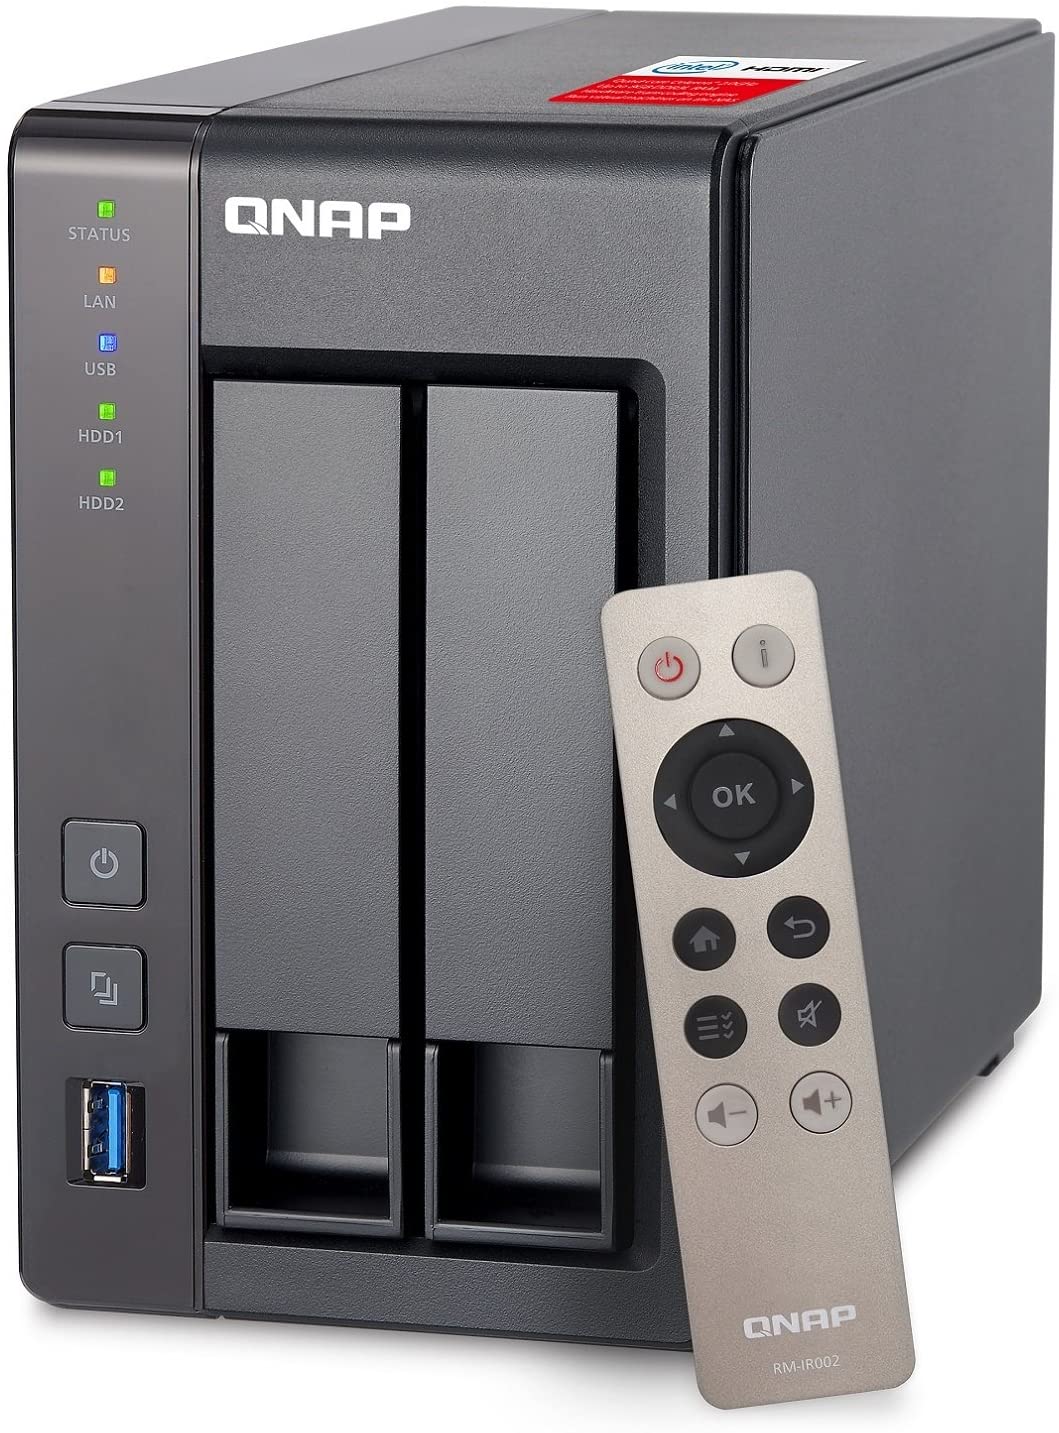 QNAP TS-251+-2G NAS